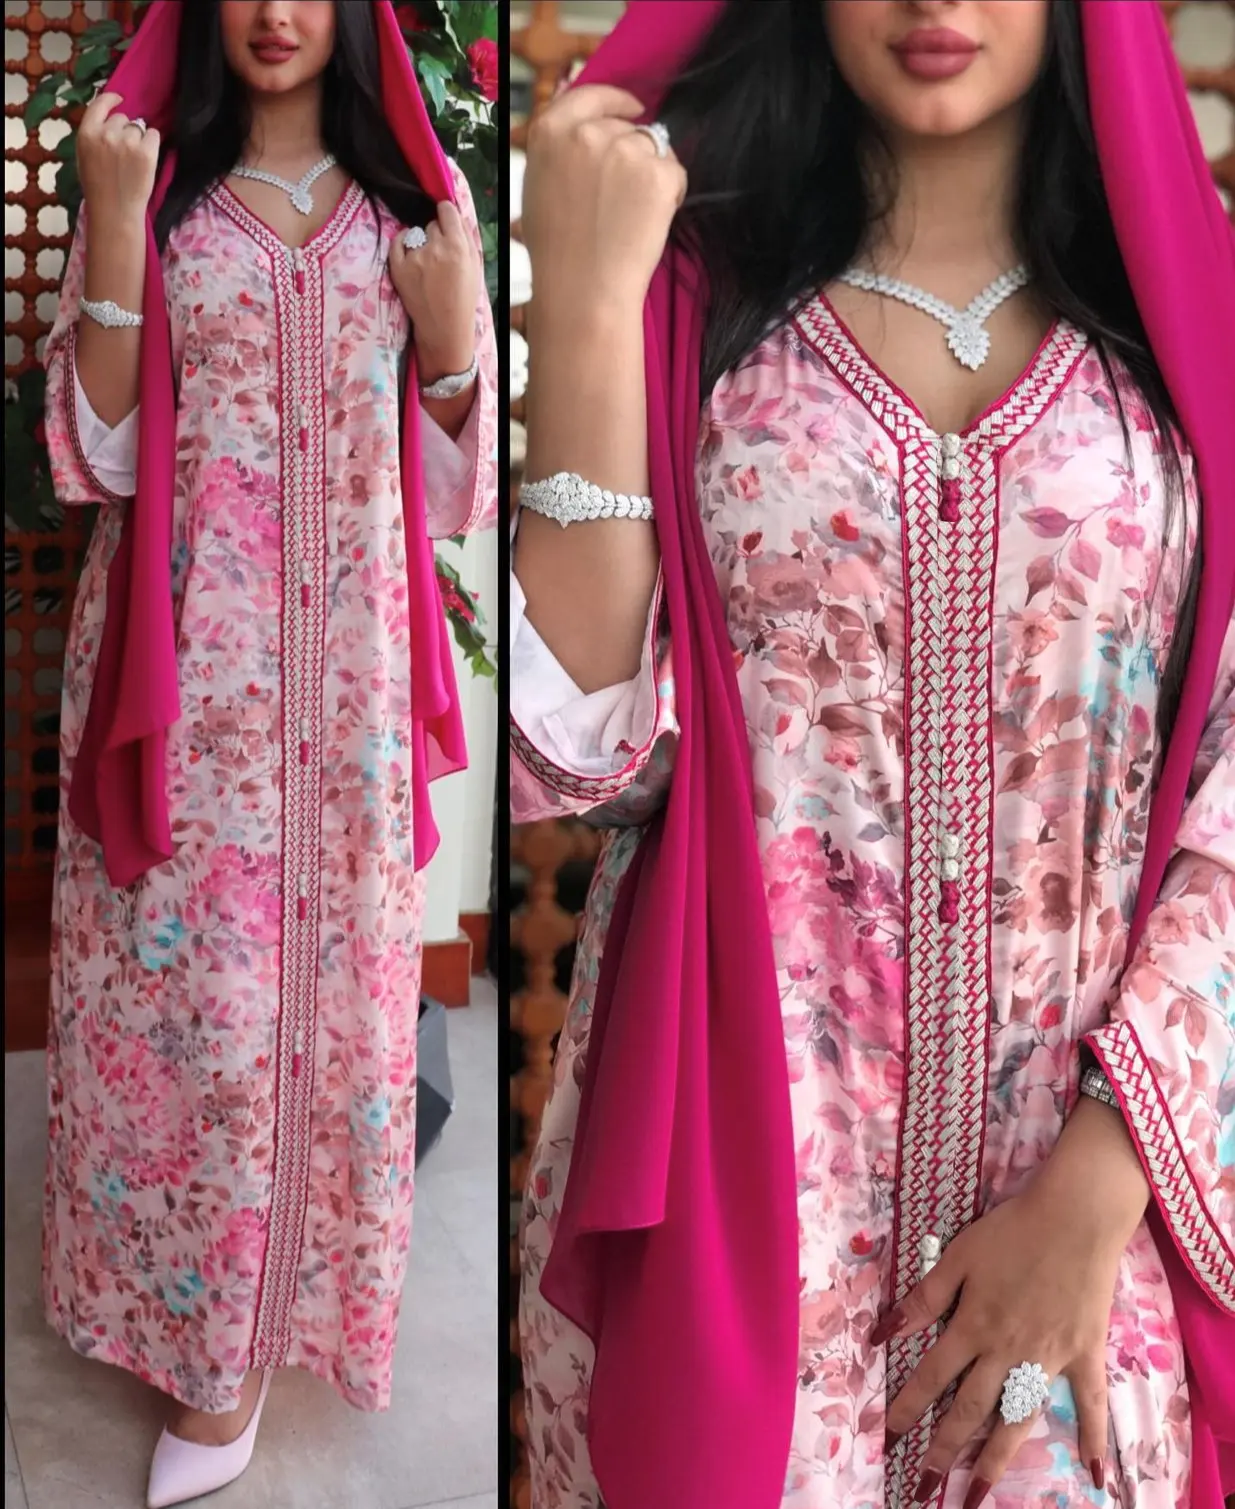 Платье wdxp134 furui с цветочным принтом розового цвета длинное платье Дубая для мусульманских женщин арабское женское длинное платье